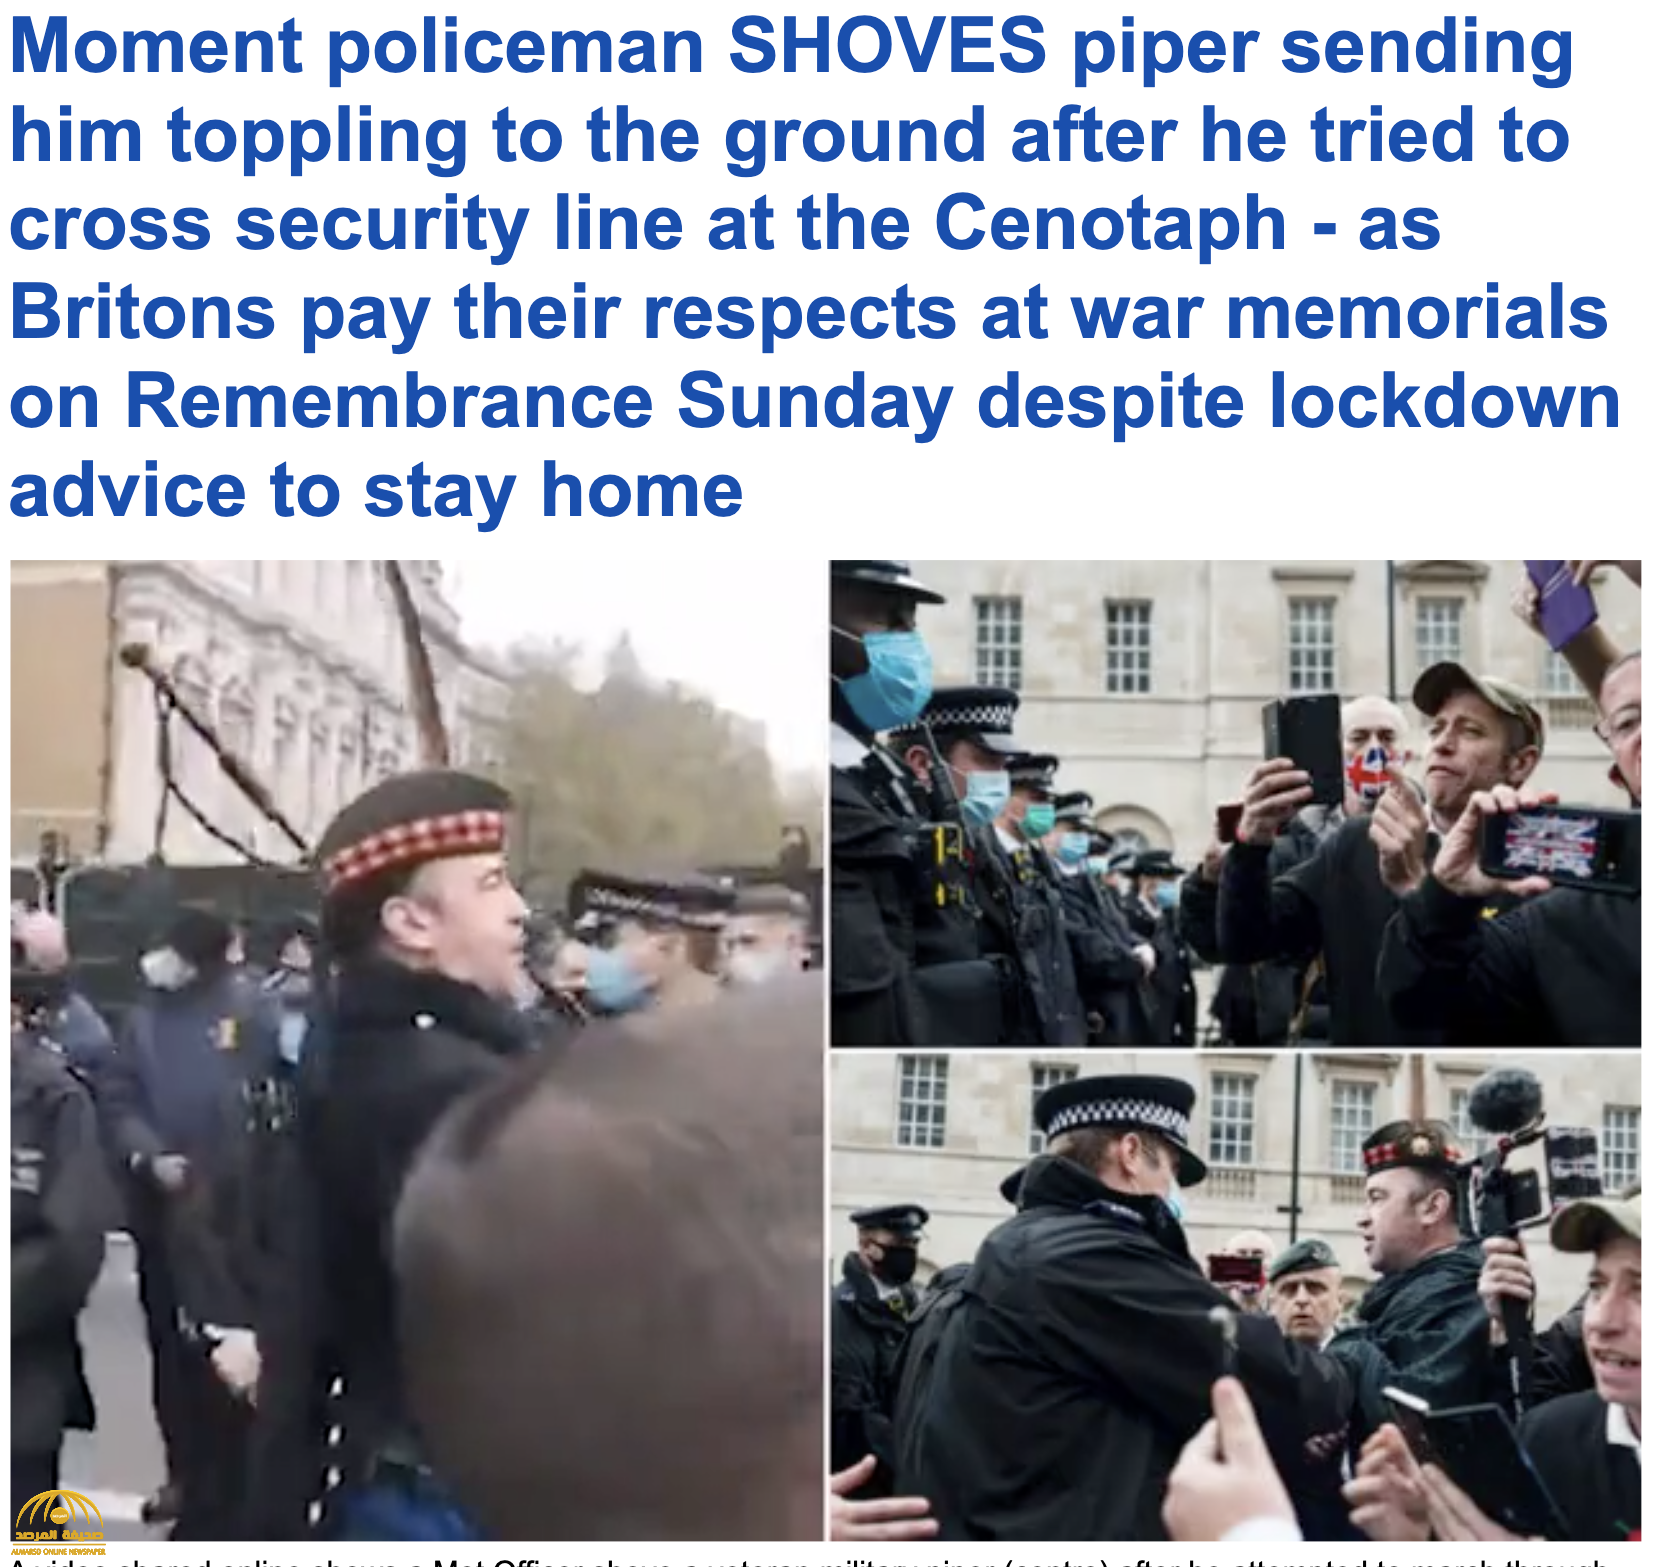 شاهد : ضابط بريطاني يعتدي على عازف مزمار  ويطرحه على الأرض خلال إحياء ذكرى النصب التذكاري في لندن